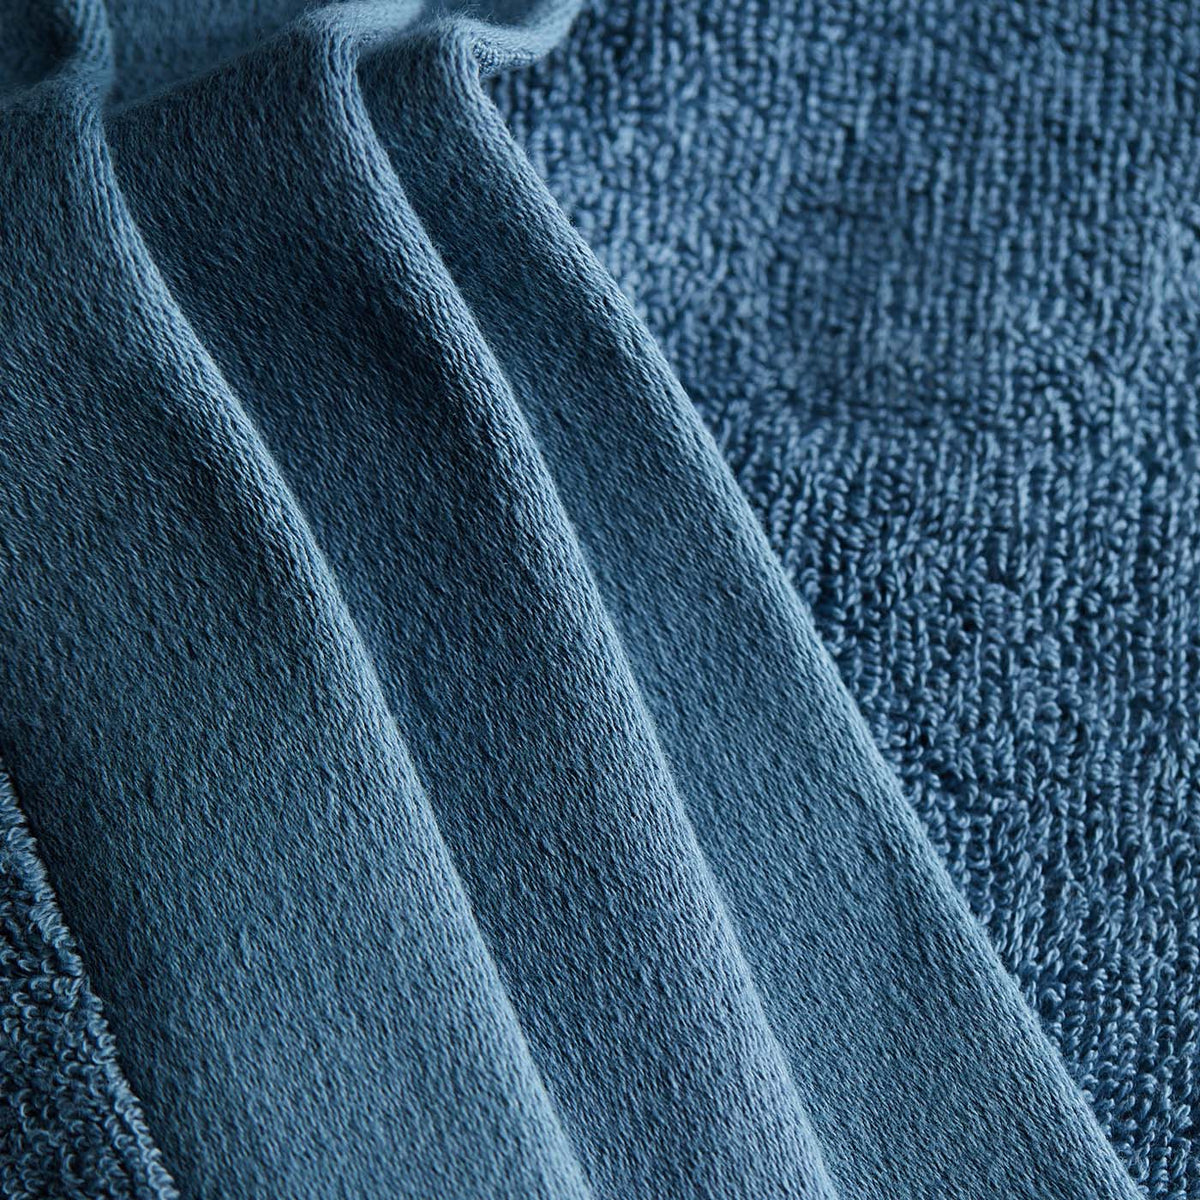 The Hand Towels - North Sea Blue - Juniper